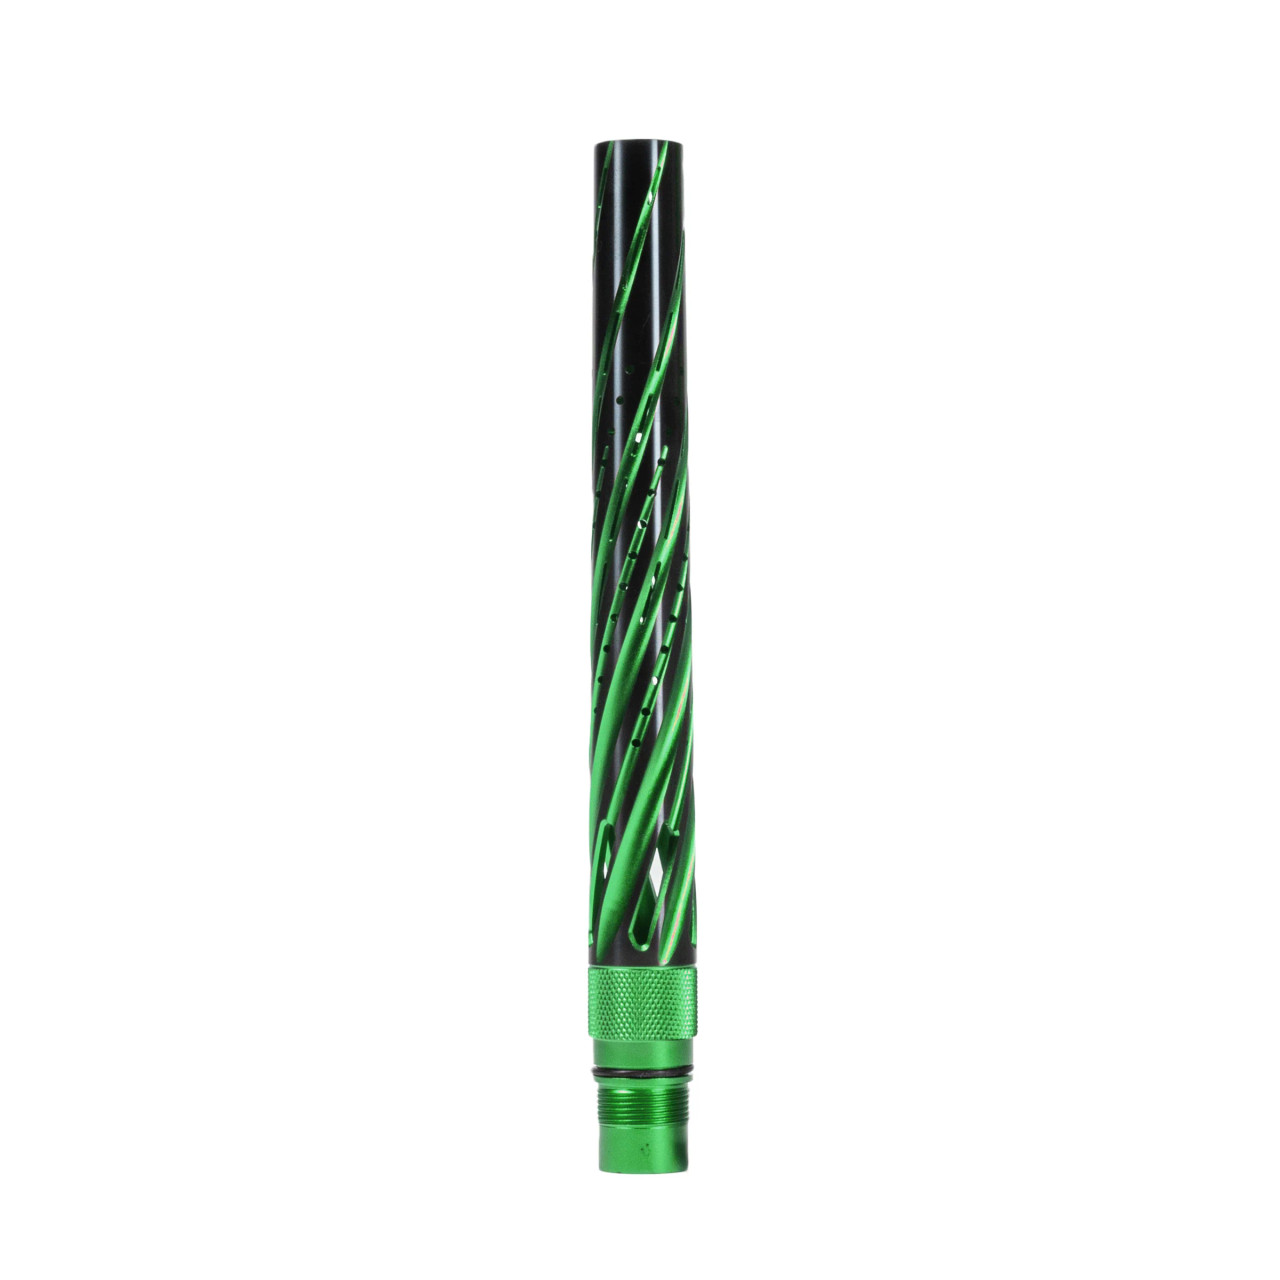 HK - LAZR FXL Tip - Orbit - Dust Green/Black